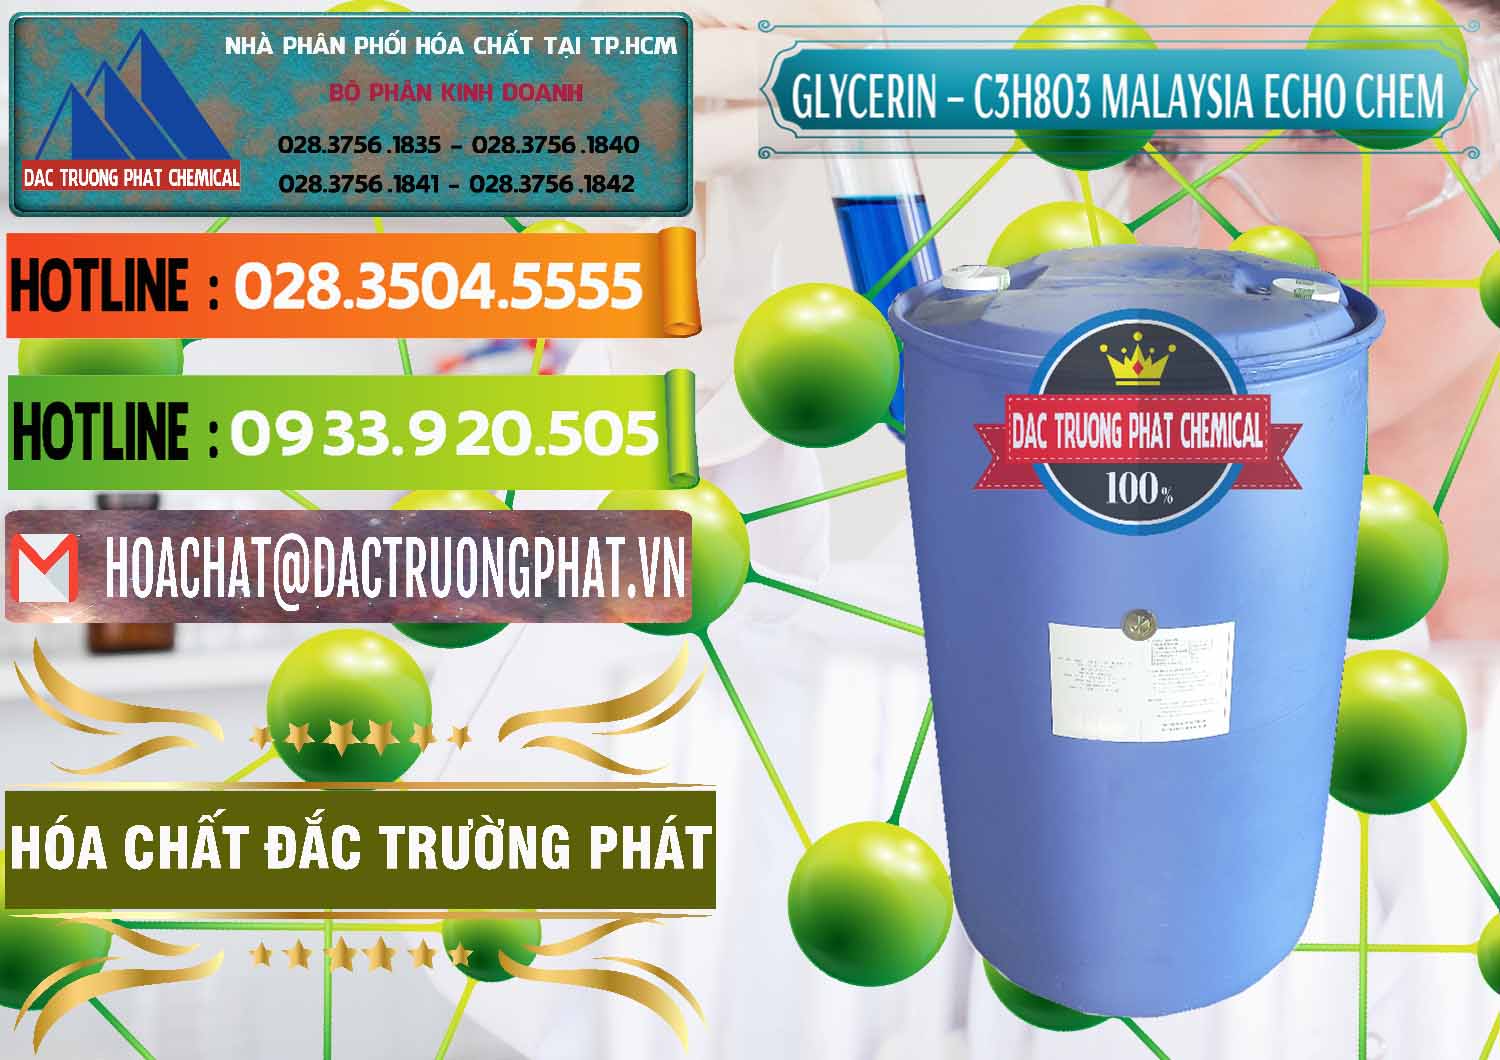 Công ty chuyên bán & cung ứng C3H8O3 - Glycerin 99.7% Echo Chem Malaysia - 0273 - Đơn vị chuyên nhập khẩu _ cung cấp hóa chất tại TP.HCM - cungcaphoachat.com.vn